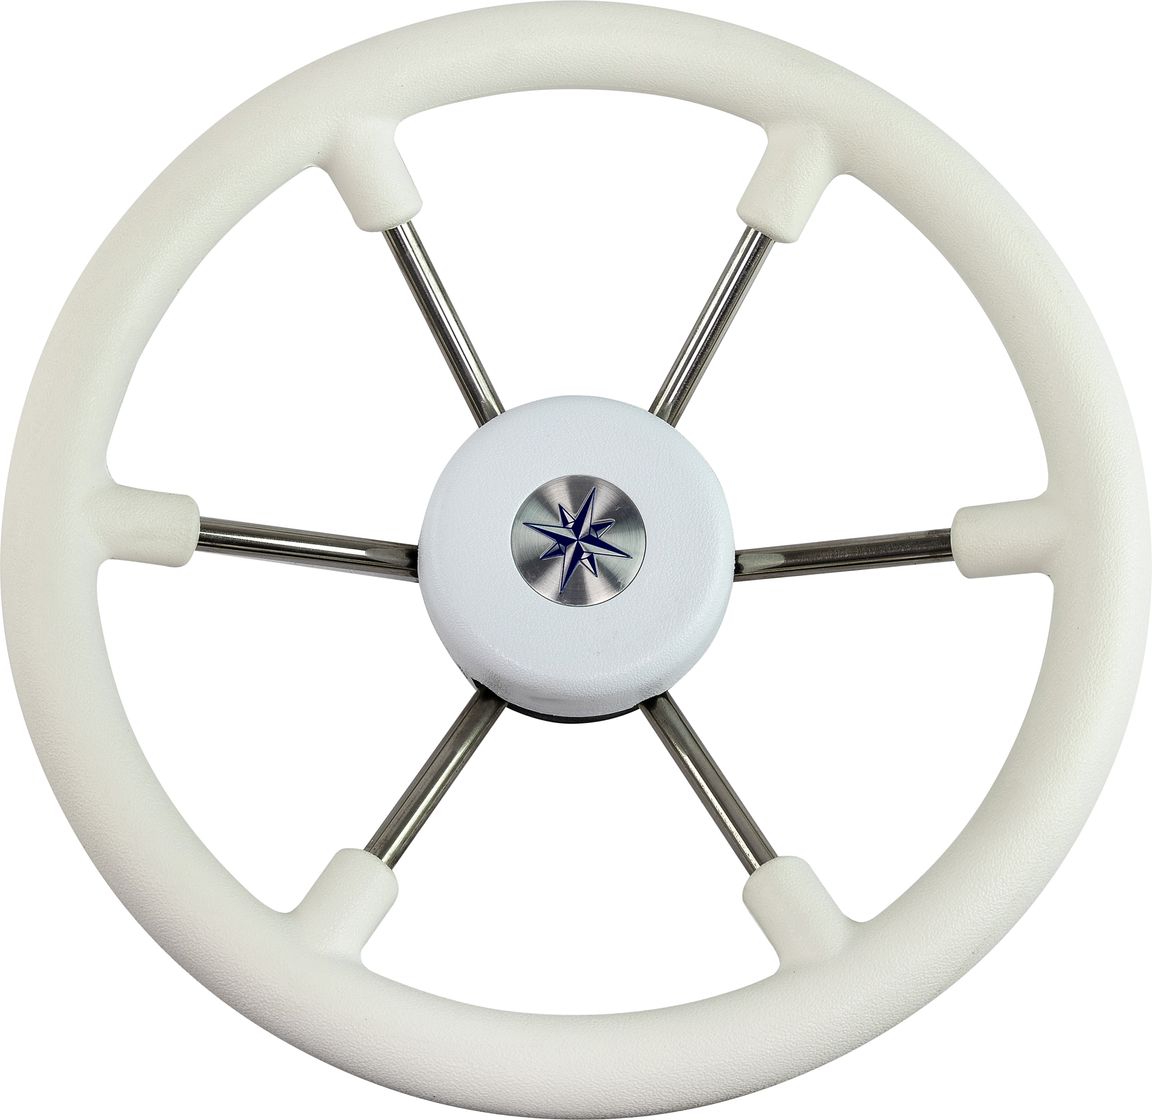 Рулевое колесо LEADER TANEGUM белый обод серебряные спицы д. 330 мм VN7330-08 рулевое колесо leader plast белый обод серебряные спицы д 360 мм vn8360 08